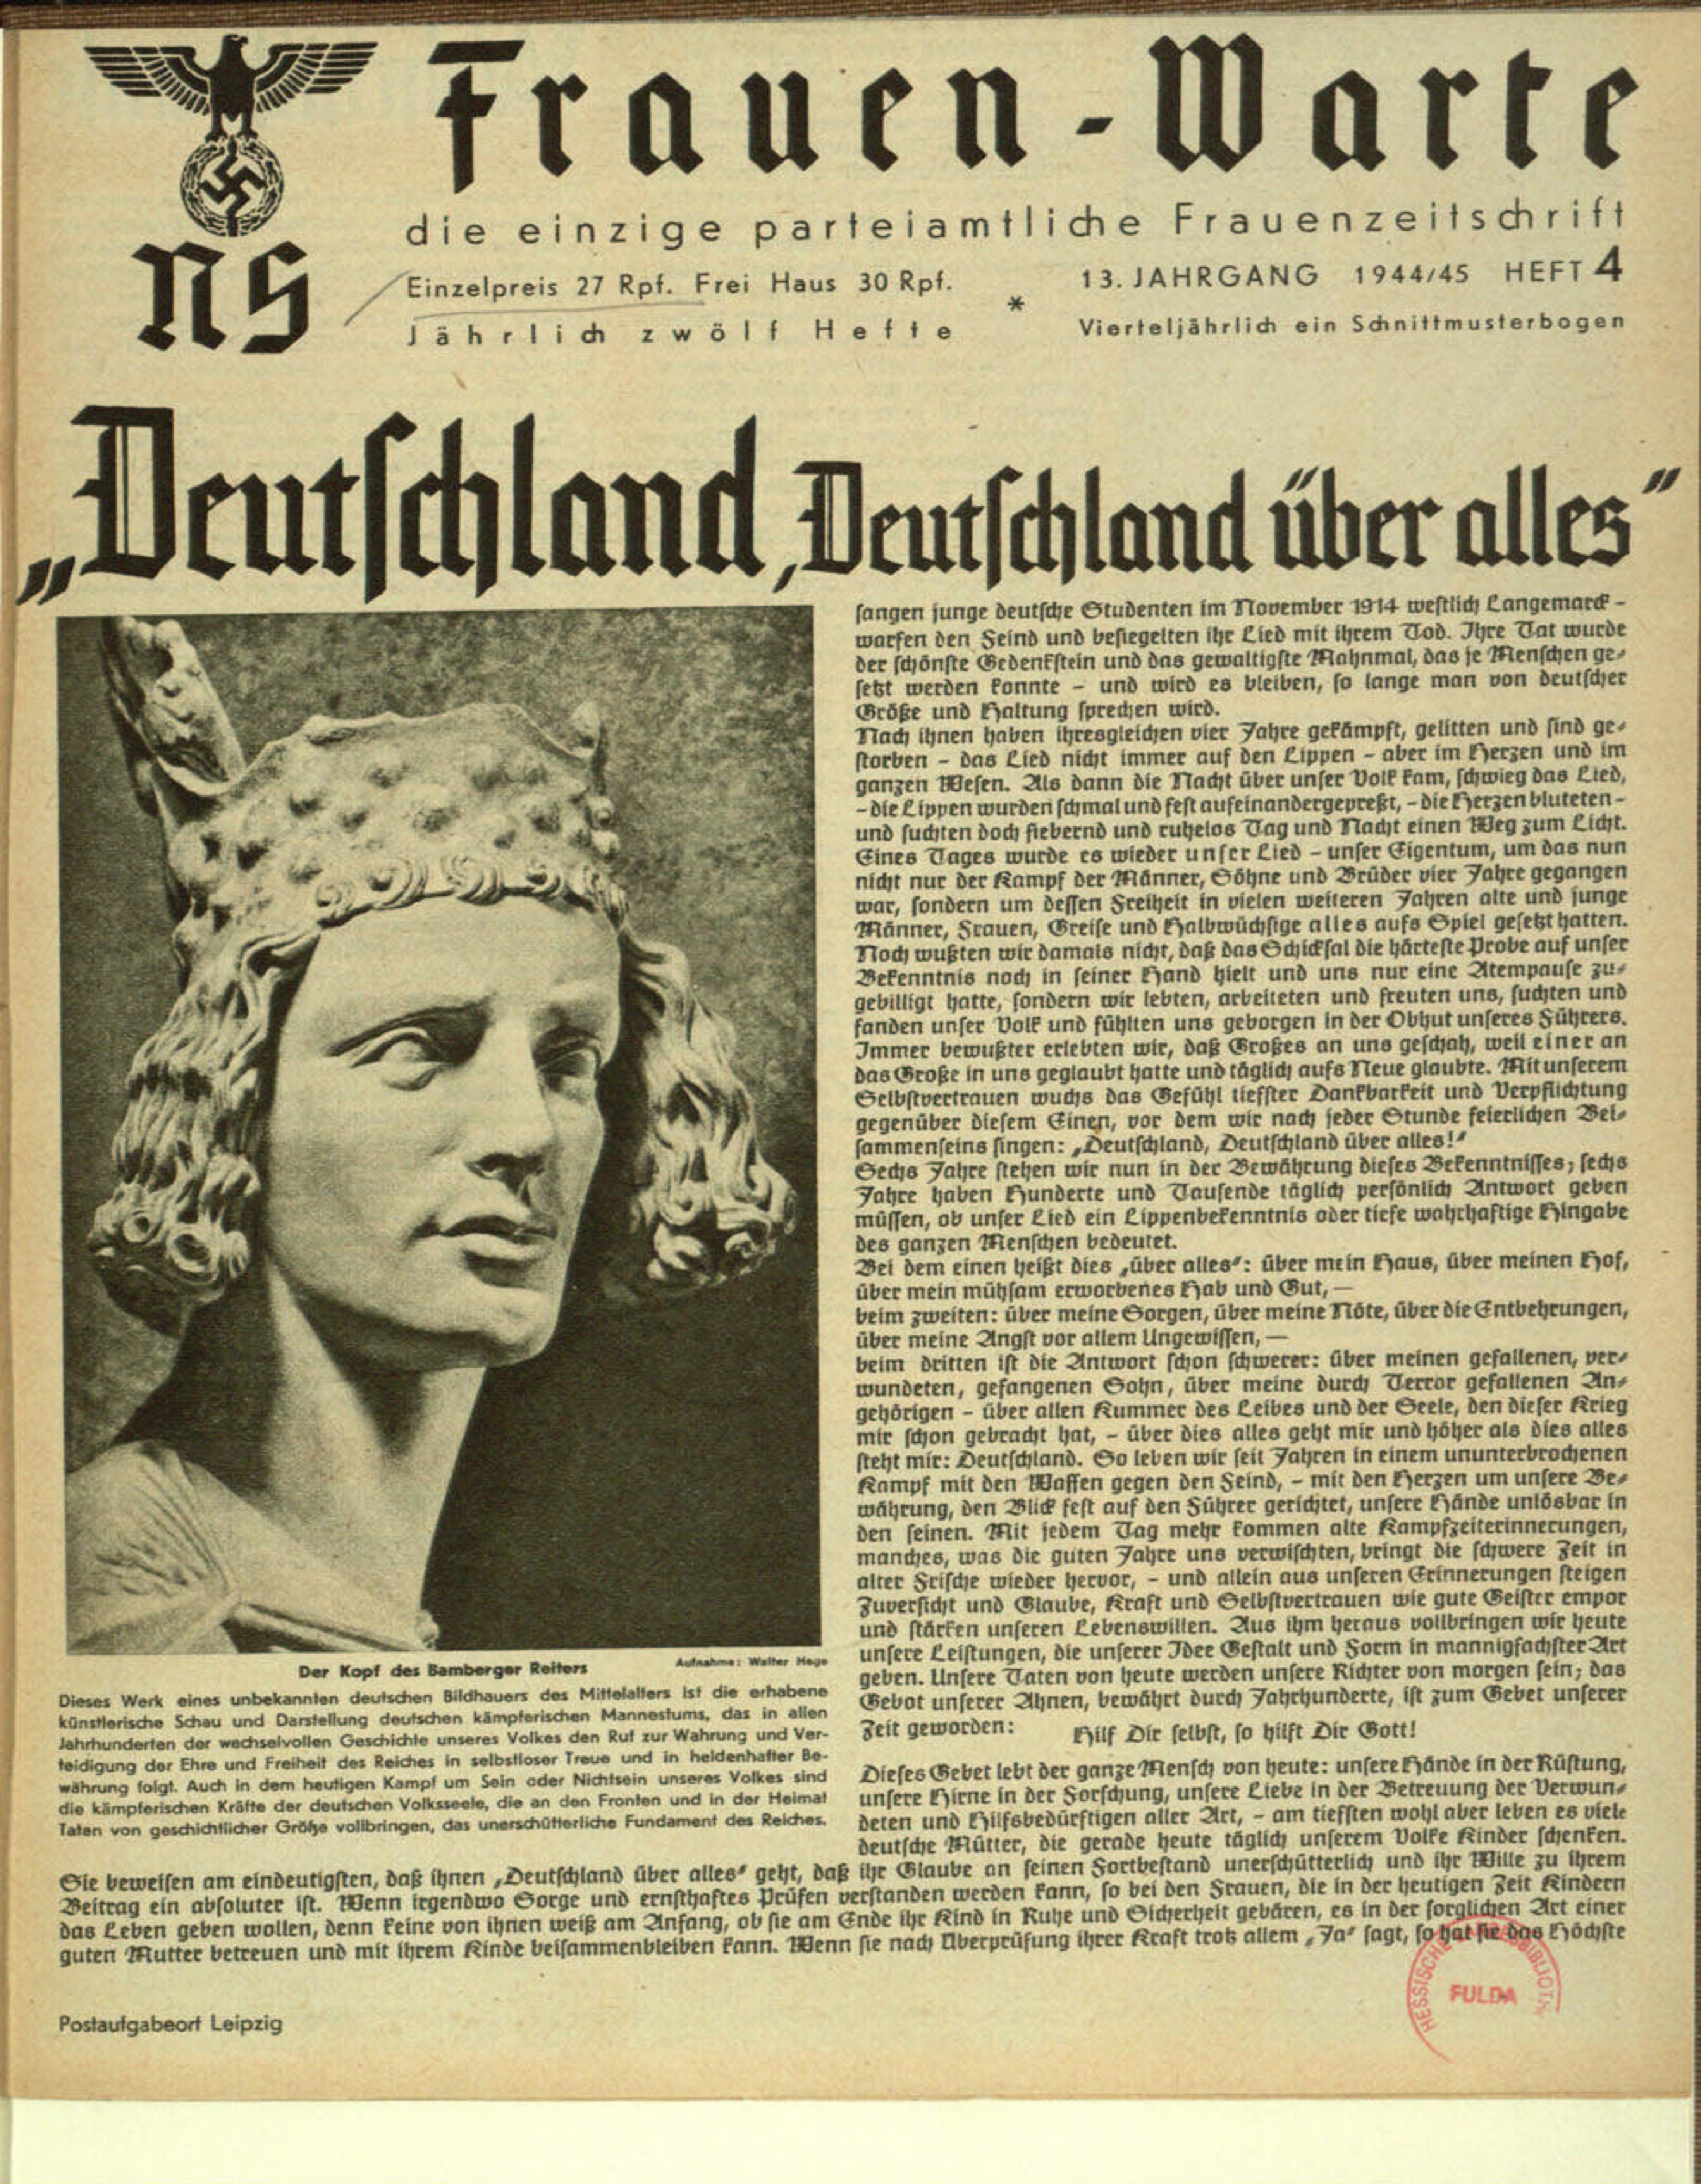 Frauen-Warte 13. Jahrgang Heft 04 (1944-1945, 8 S., Scan, Fraktur)